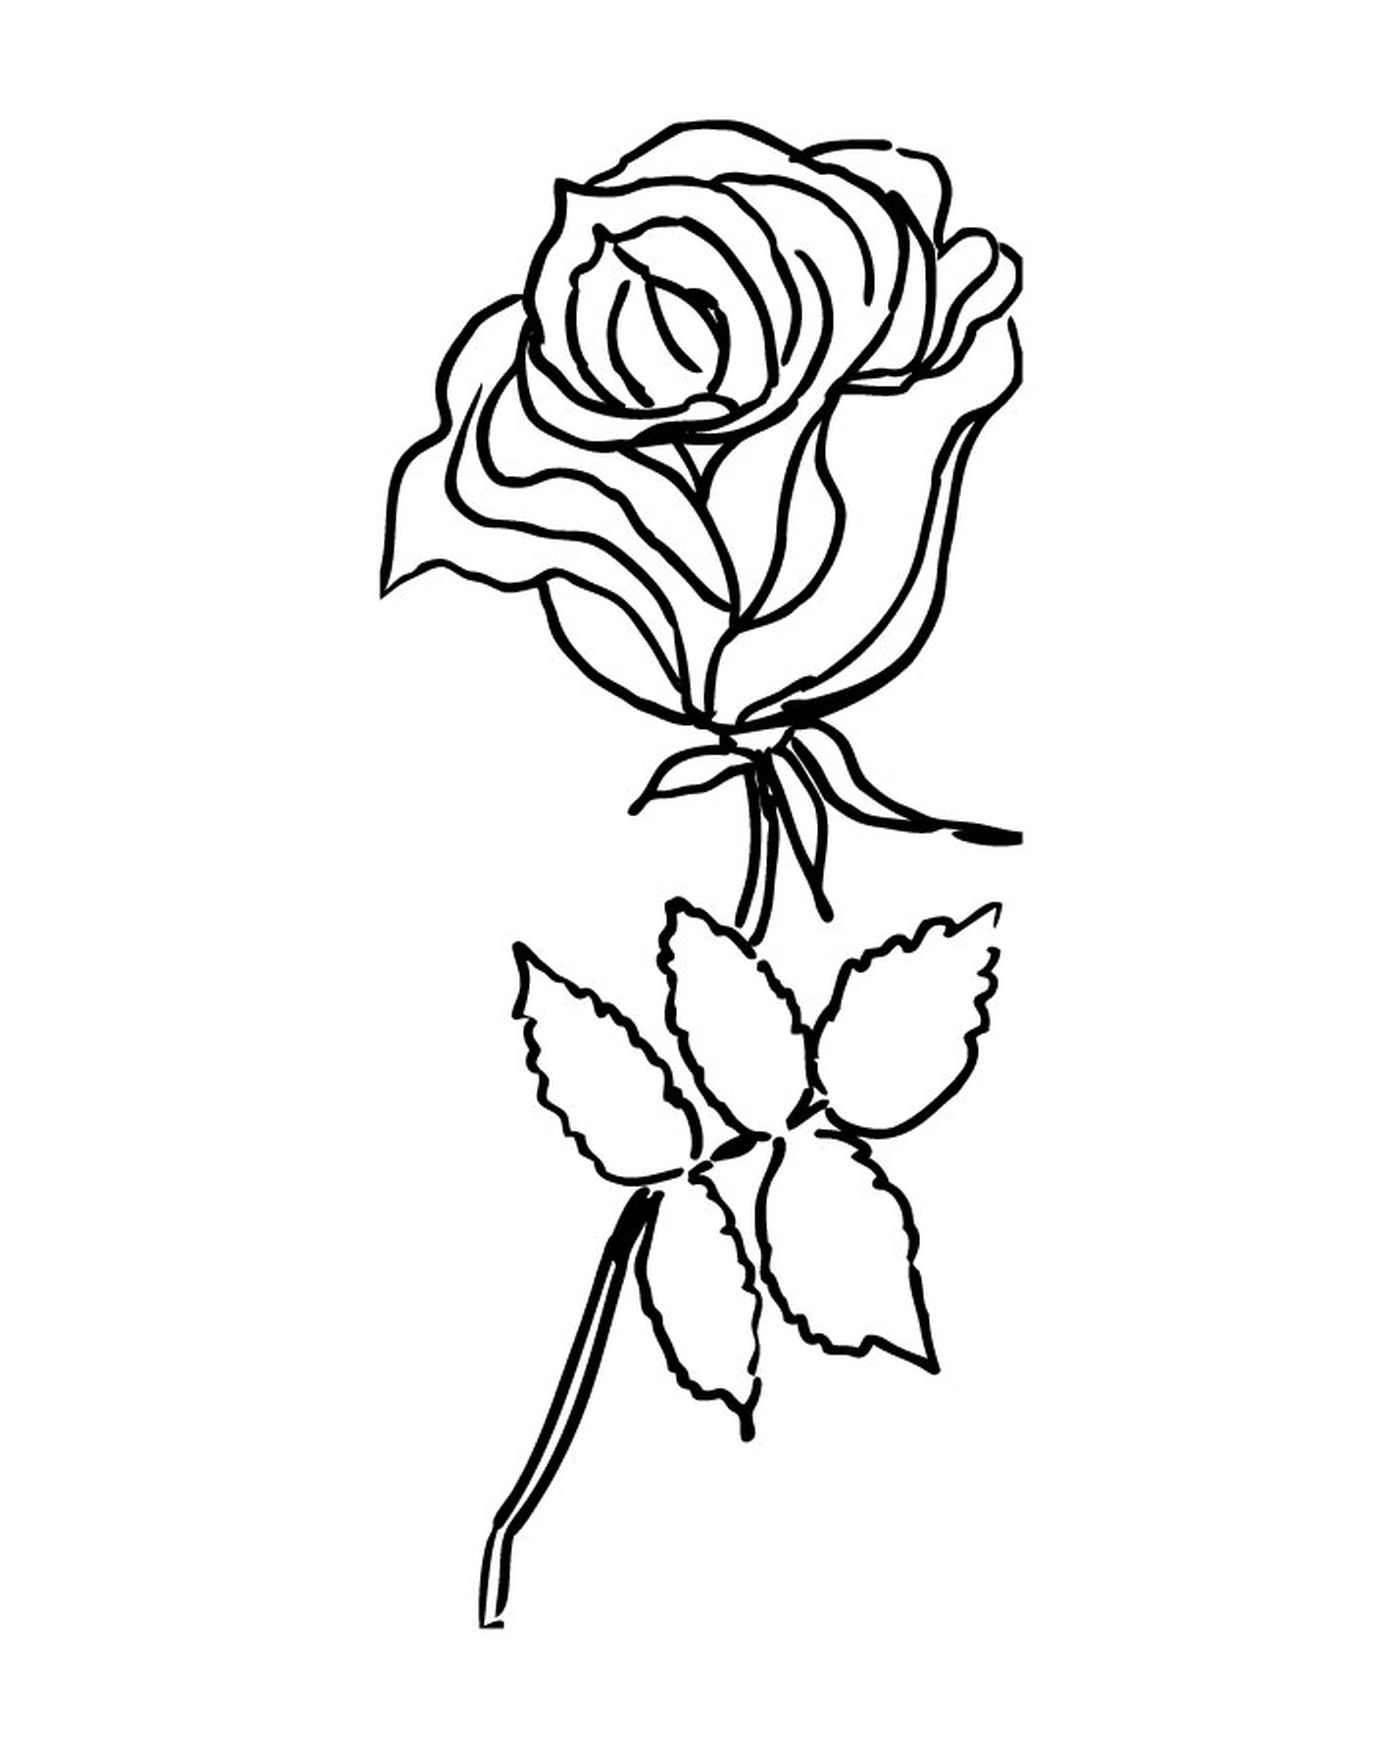  Rosa semplice ed elegante 